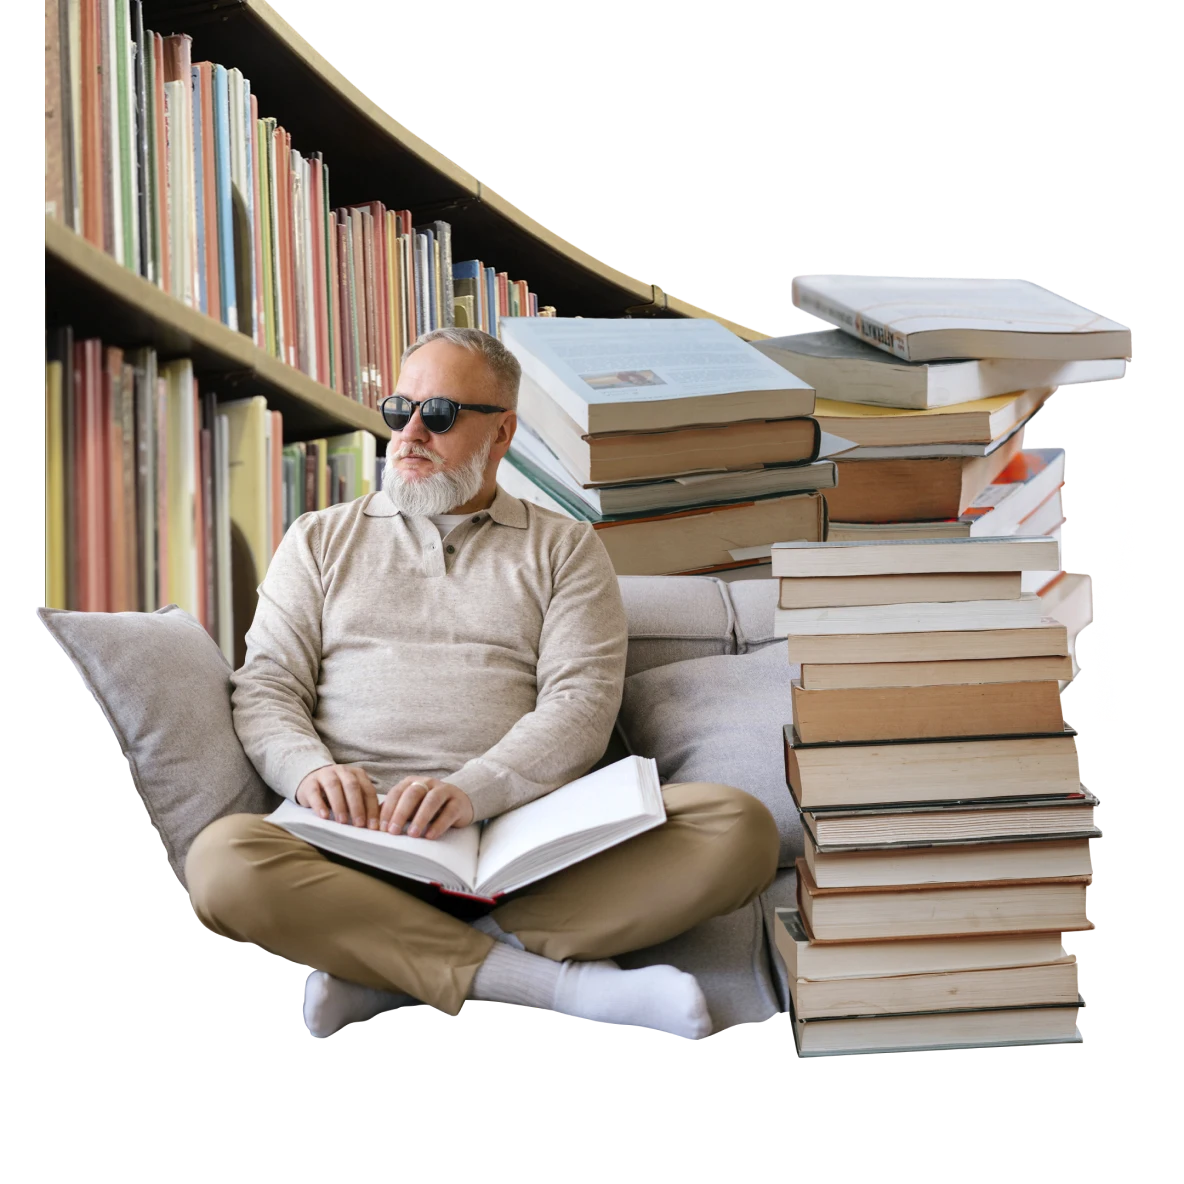 Uomo bianco ipovedente con occhiali da sole, seduto a gambe incrociate mentre legge un libro in braille. È circondato da pile di libri e dalla libreria di una biblioteca.